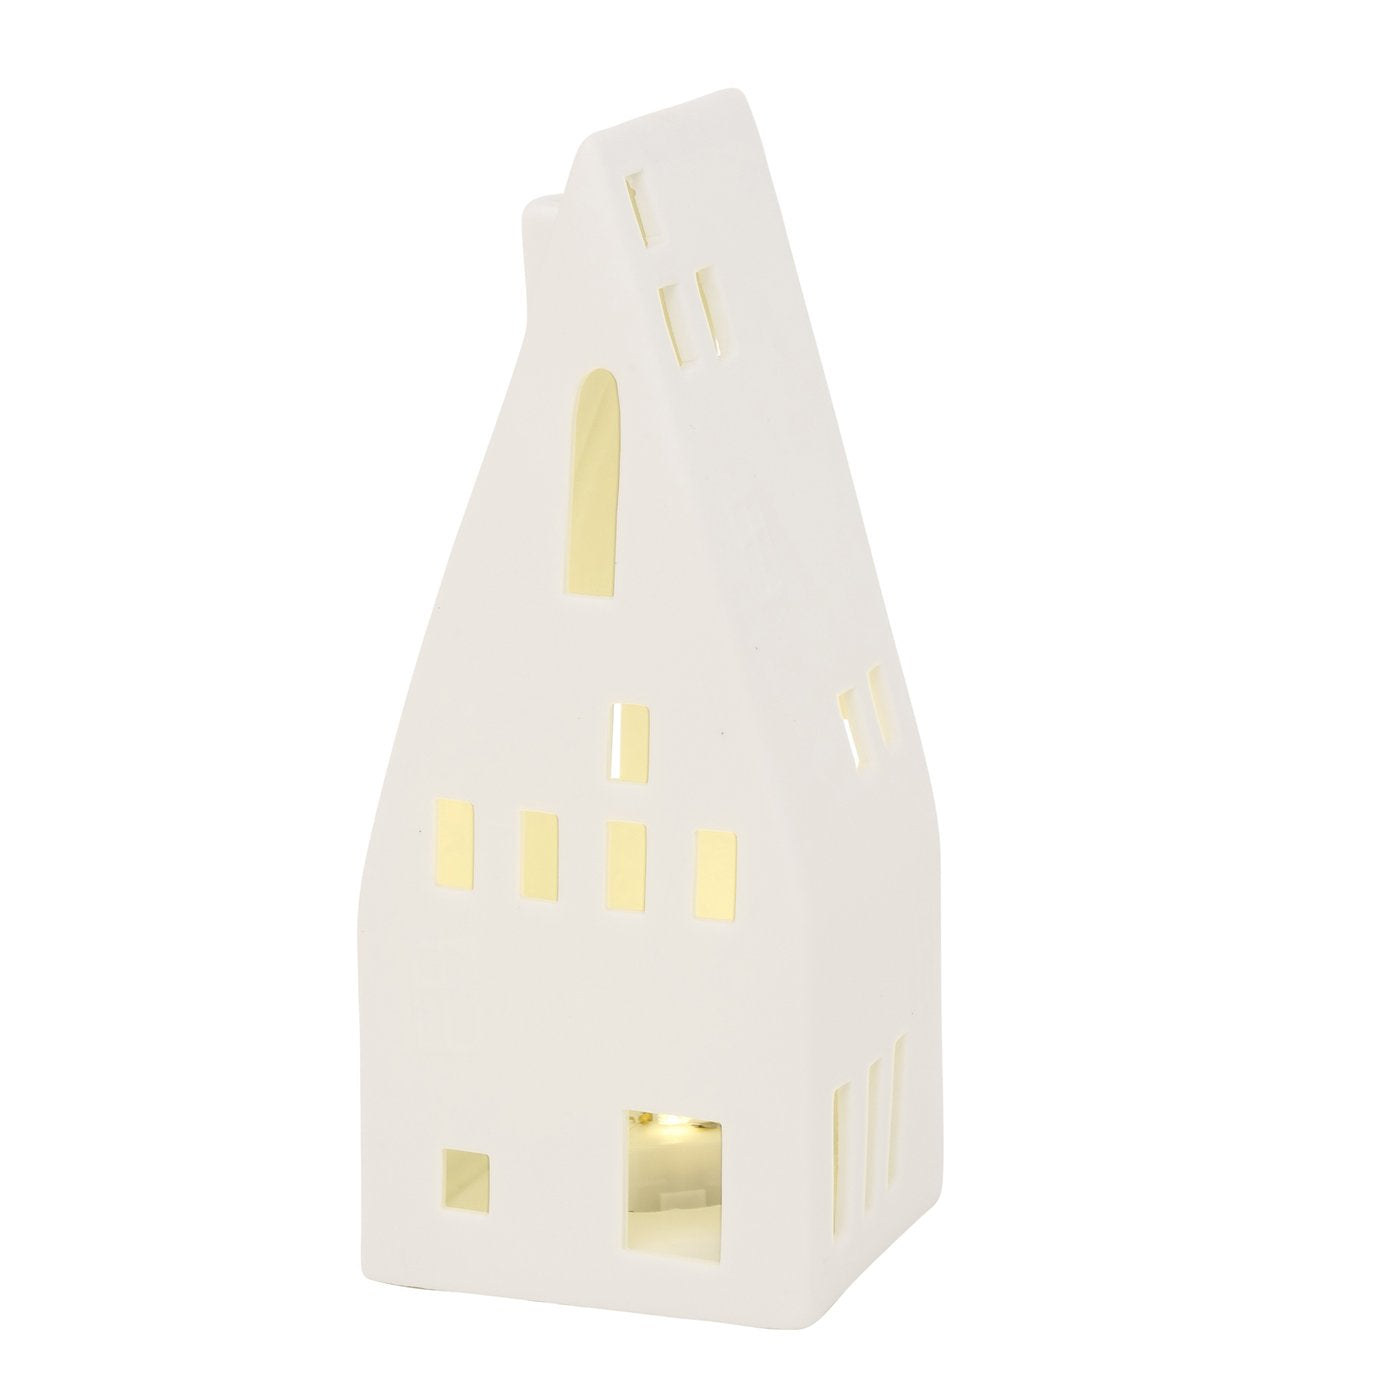 Lichthaus Hygga mit LED Beleuchtung weiß